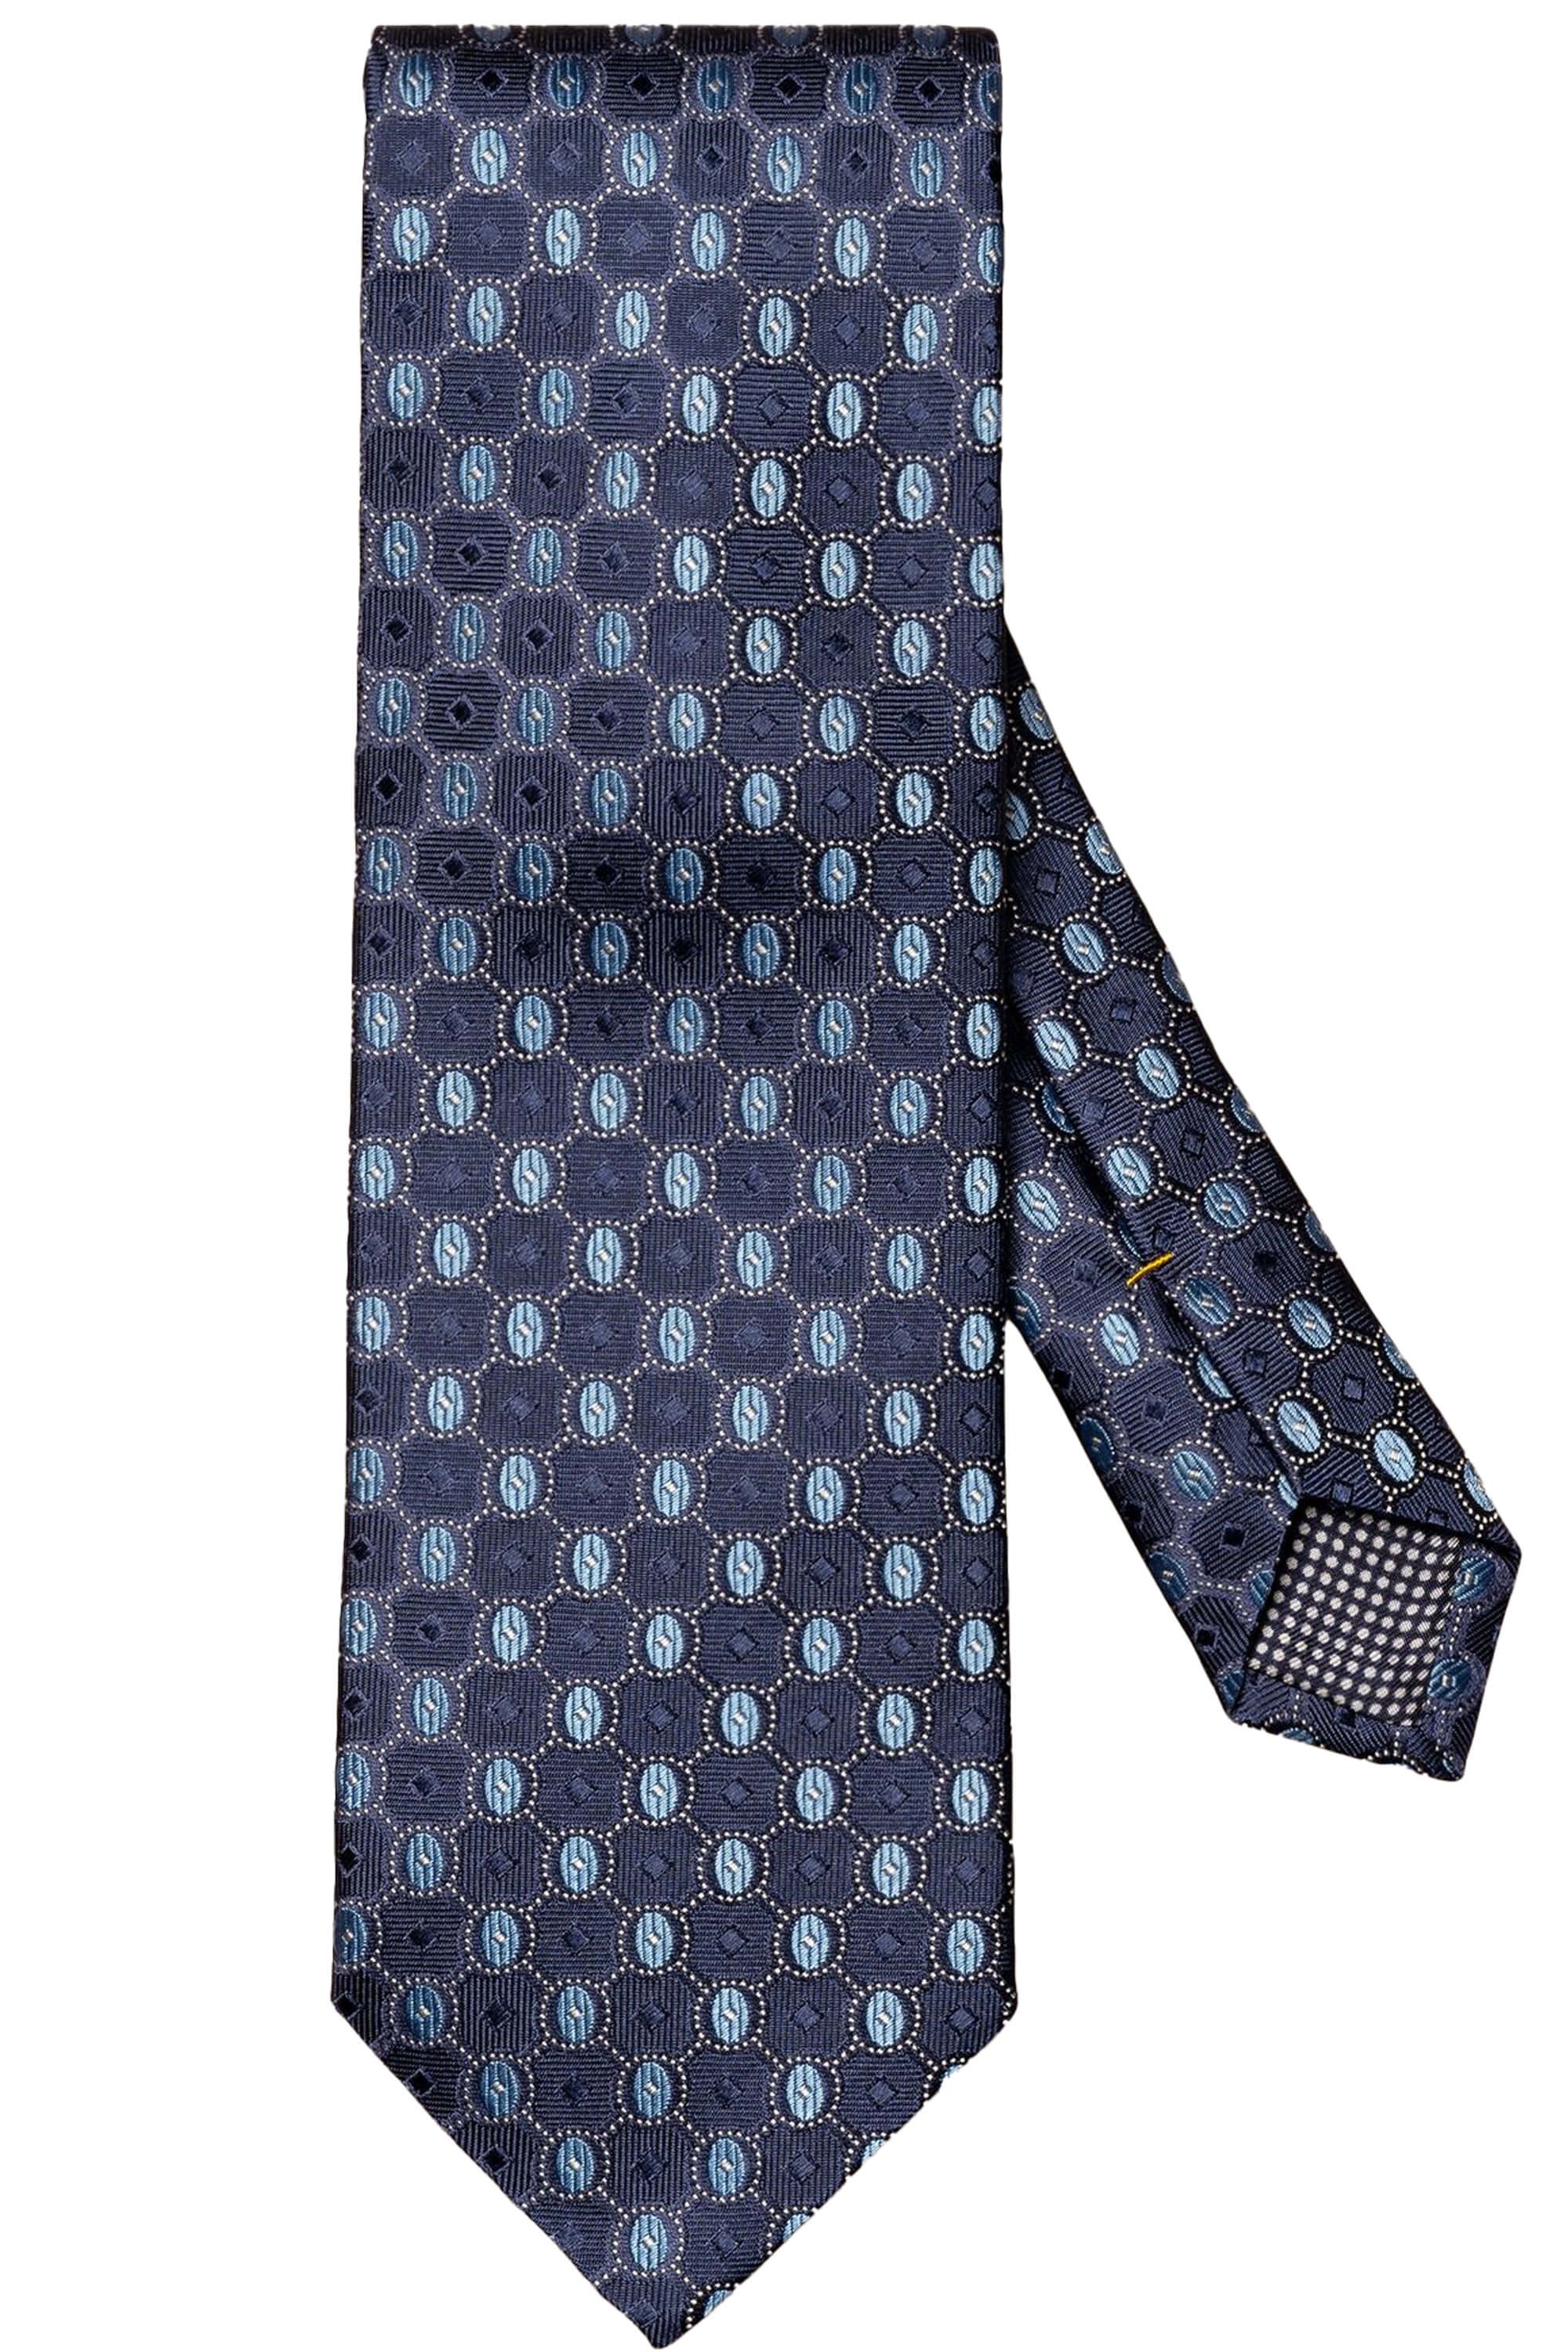 Eton Navy Blue Silk Tie